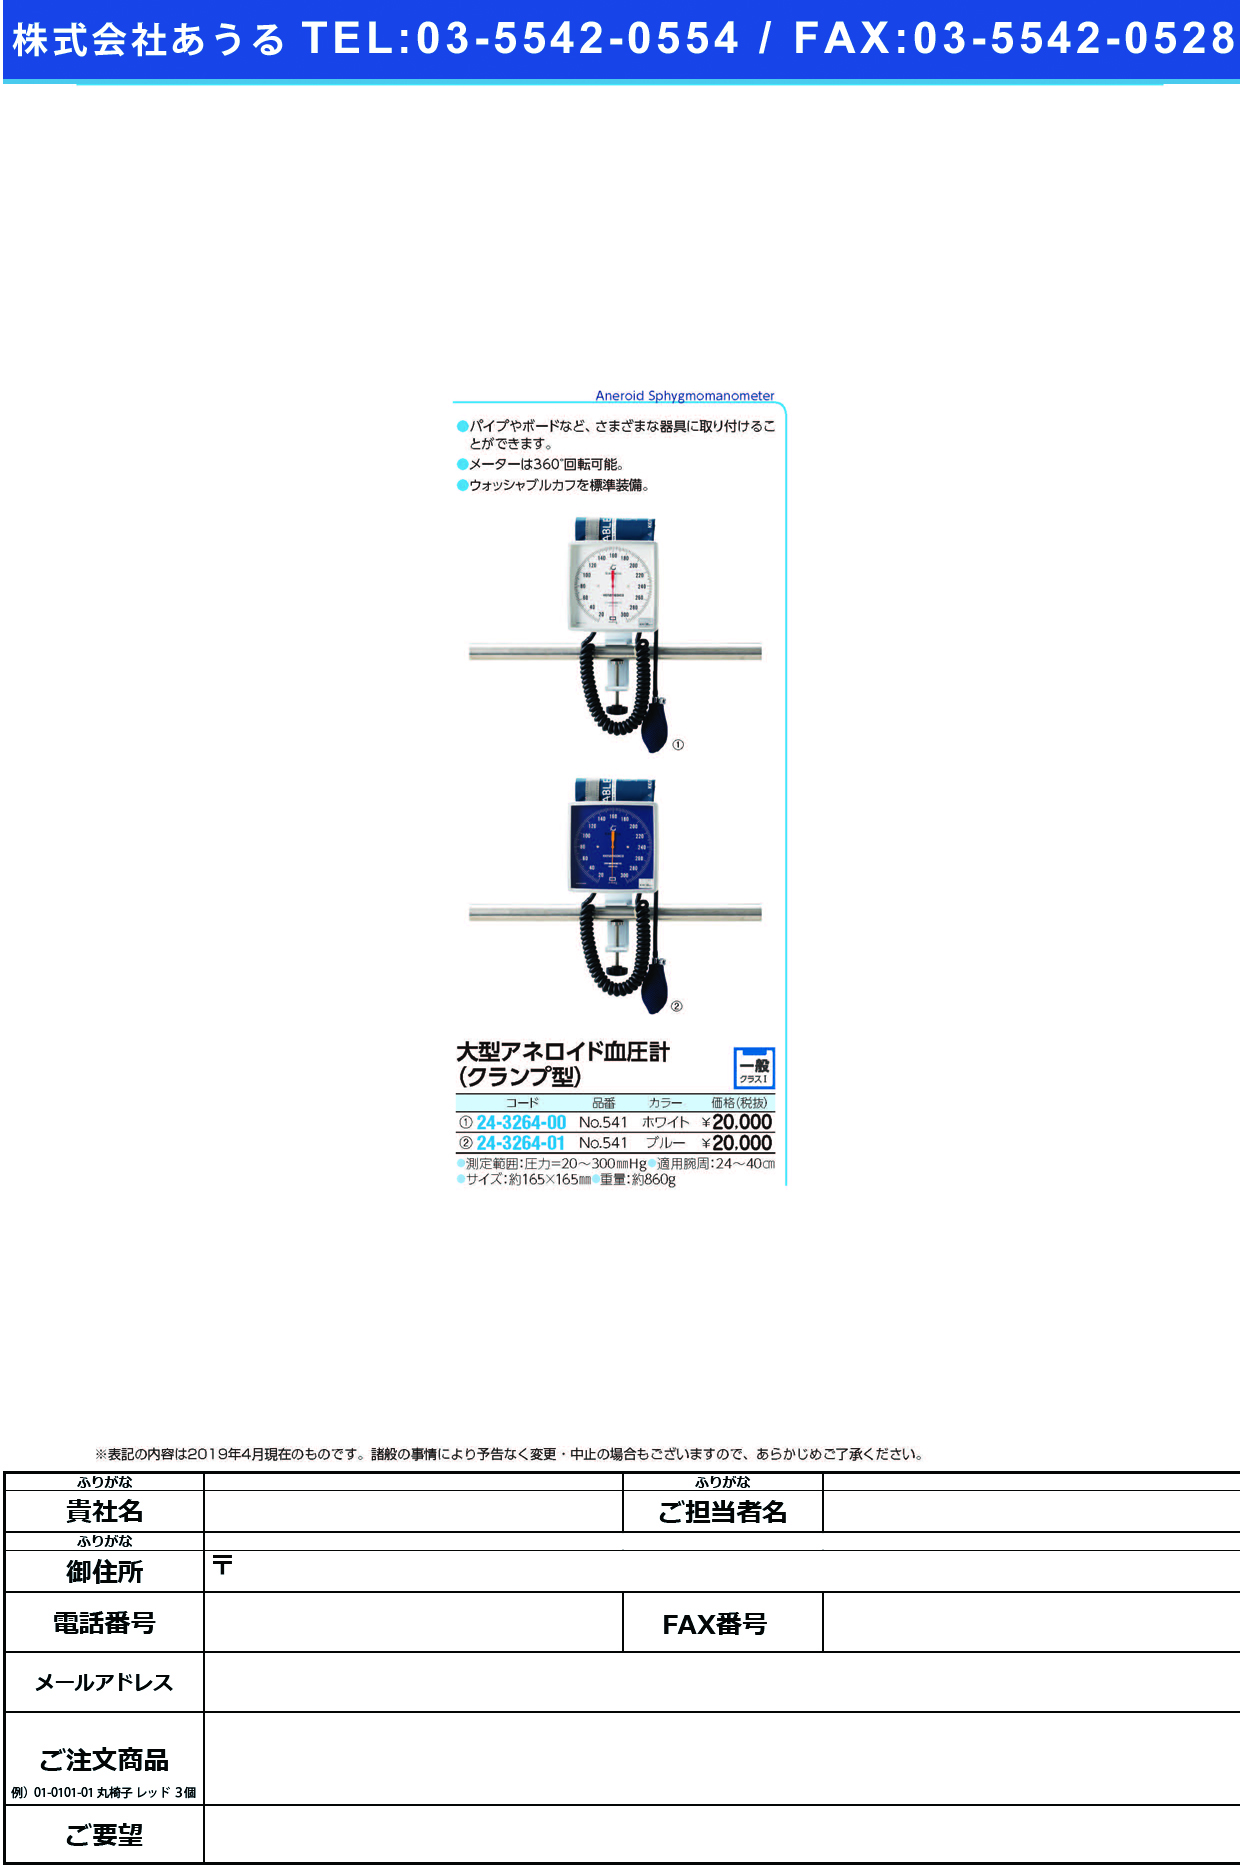 (24-3264-01)大型アネロイド血圧計（クランプ型） NO.541(ﾌﾞﾙｰ)Wｶﾌ ｵｵｶﾞﾀｱﾈﾛｲﾄﾞｹﾂｱﾂｹｲ(ケンツメディコ)【1台単位】【2019年カタログ商品】